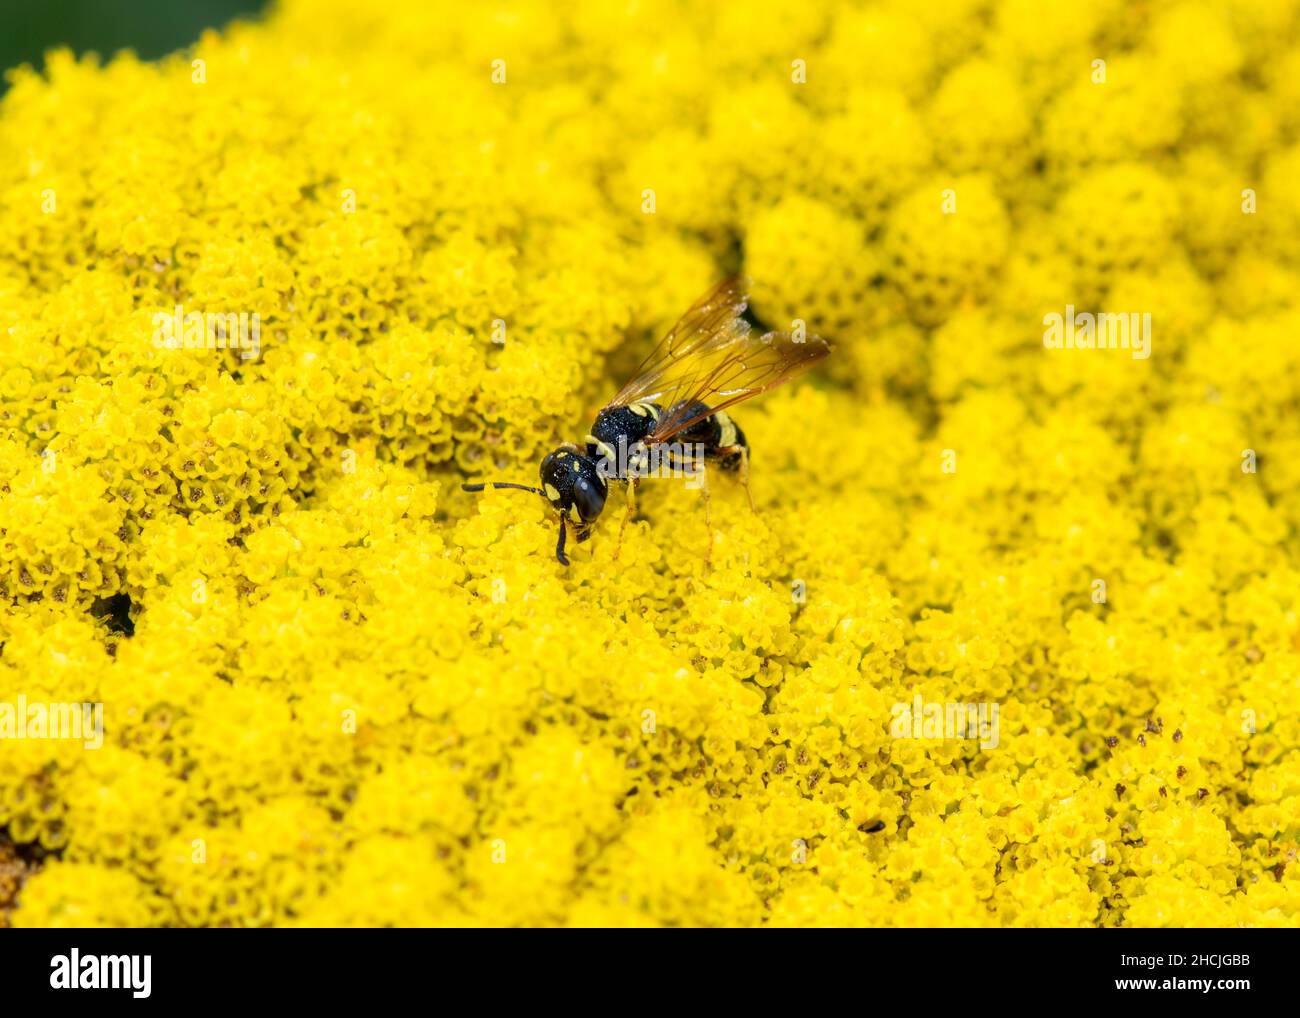 Una avispa depredadora de caza de abejas, el Beewolf con respaldo de la abeja (Philanthus gibbosus) busca polen en una Flor Amarilla Brillante Foto de stock